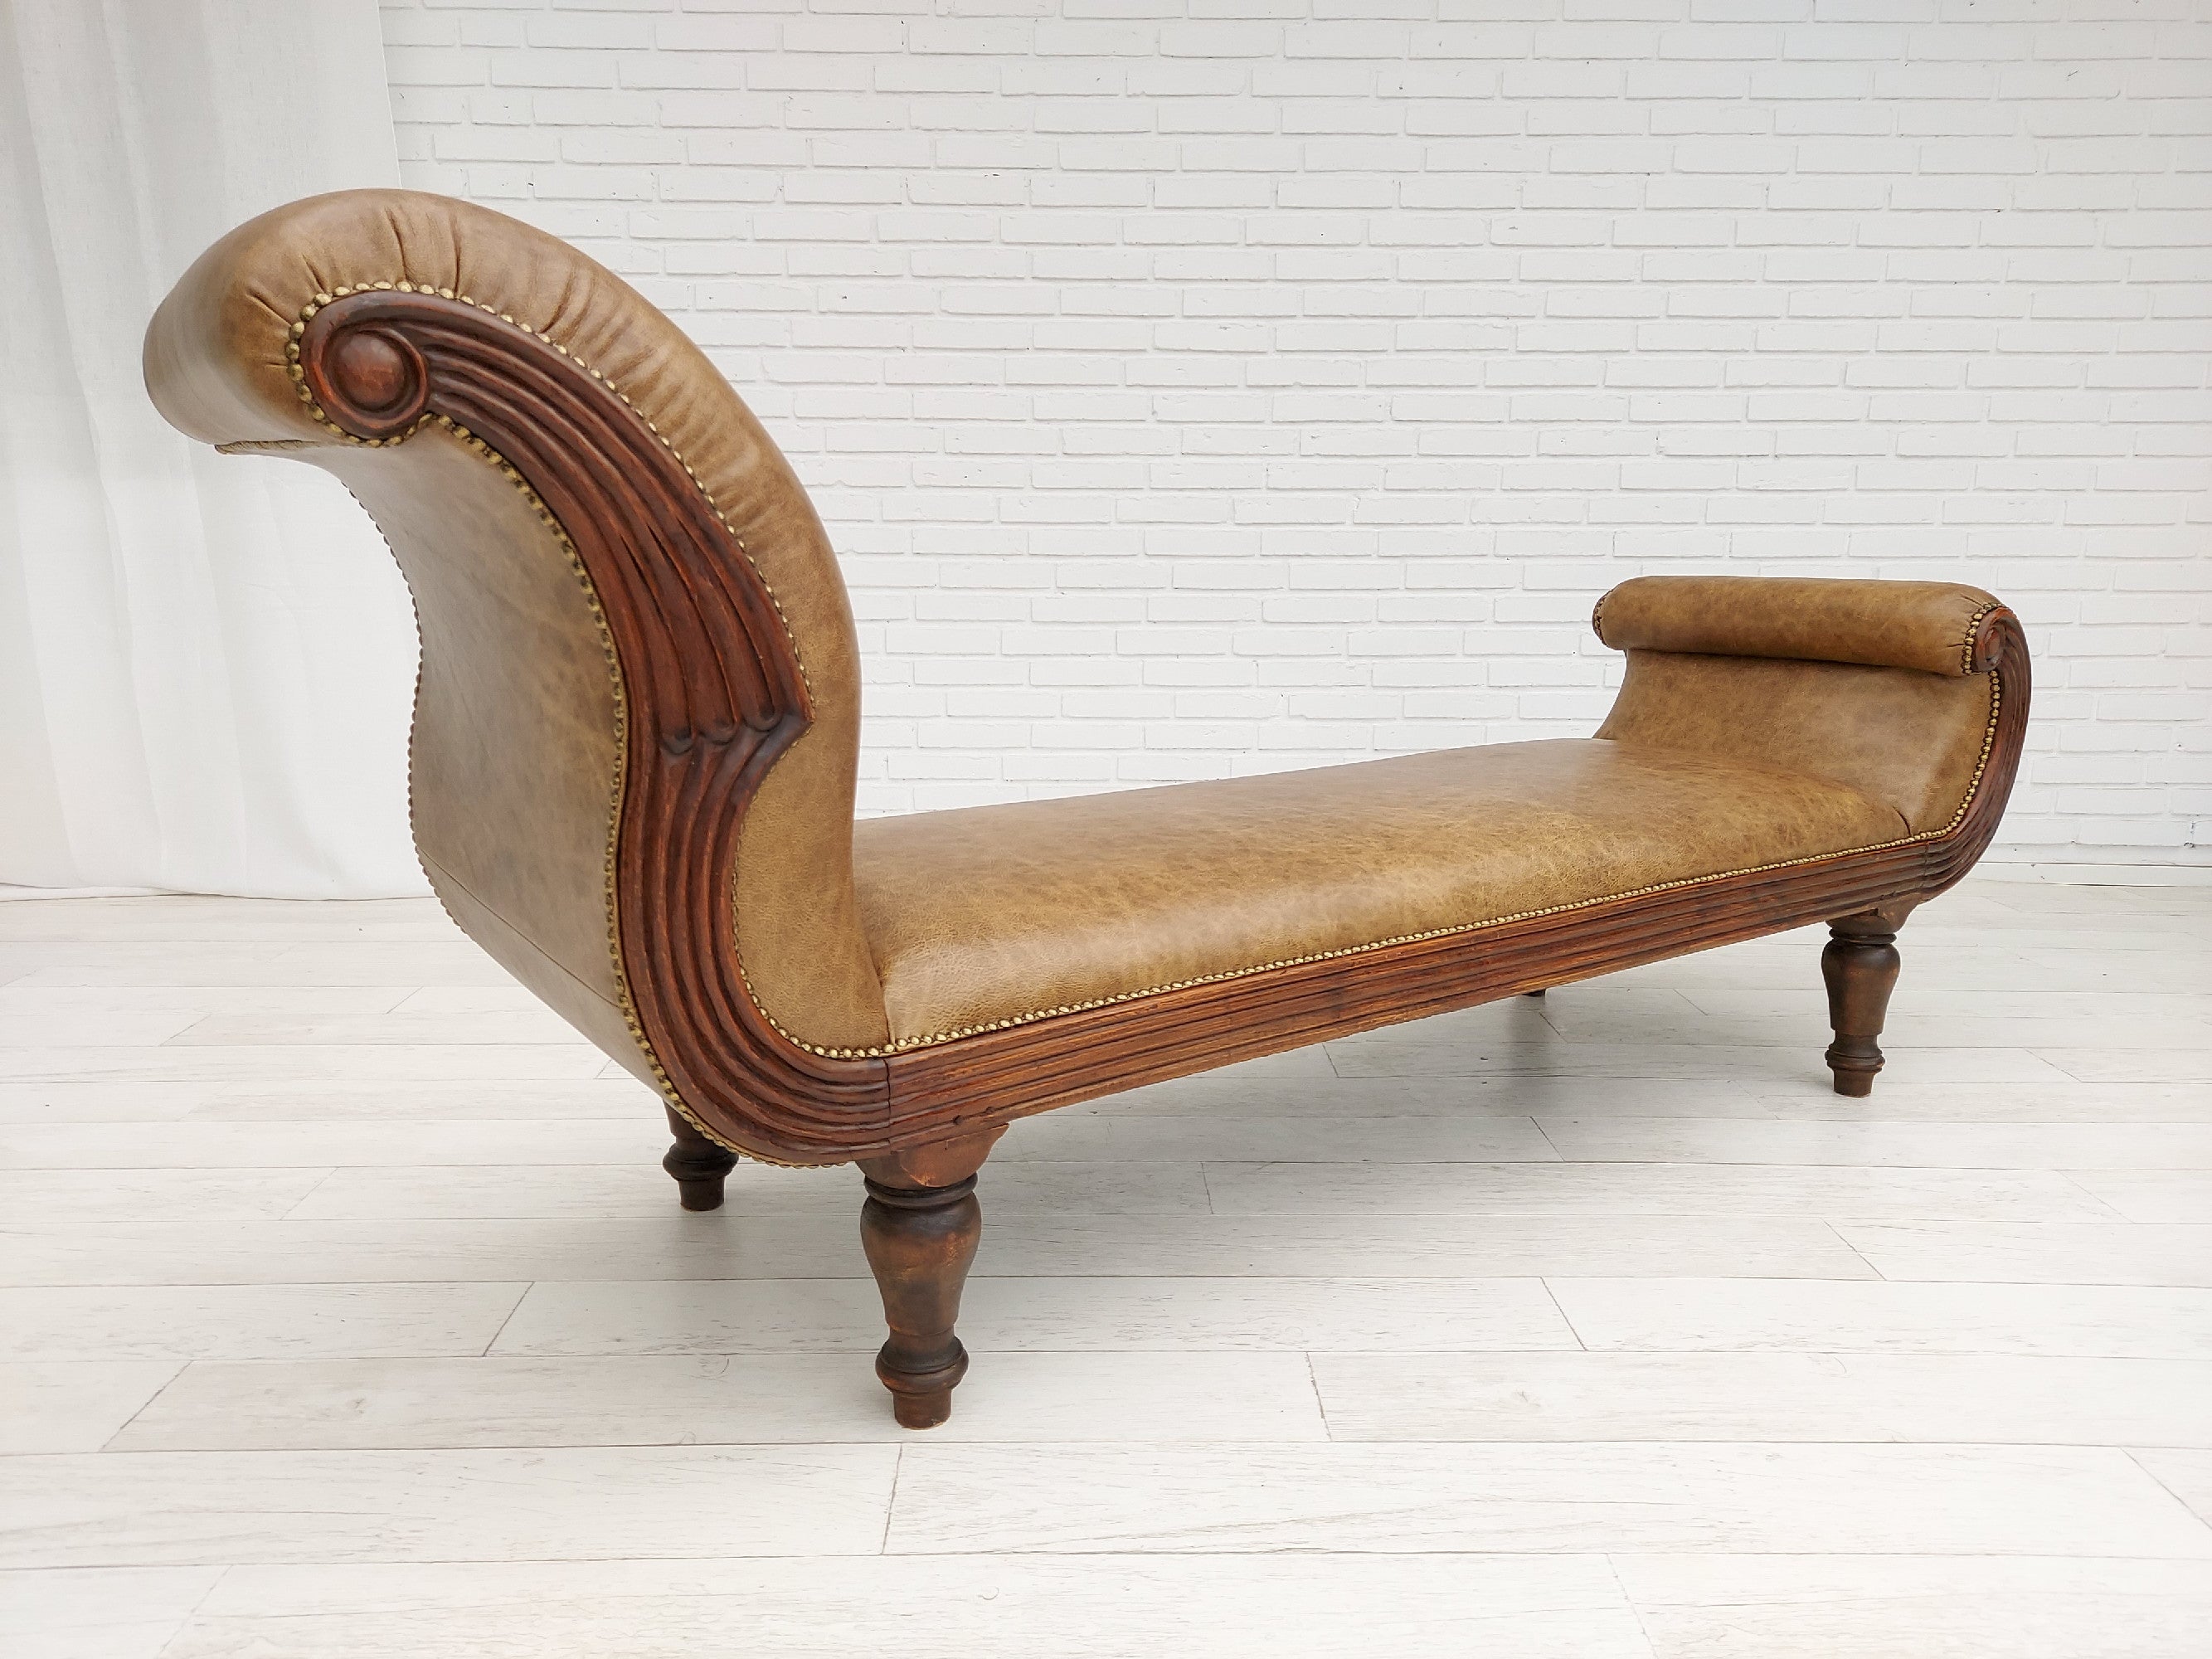 Rusteloos Regenachtig Nauwgezet Daybed / chaise longue, antiek, gerenoveerd, jaren 20, leer - Skaven  Denemarken